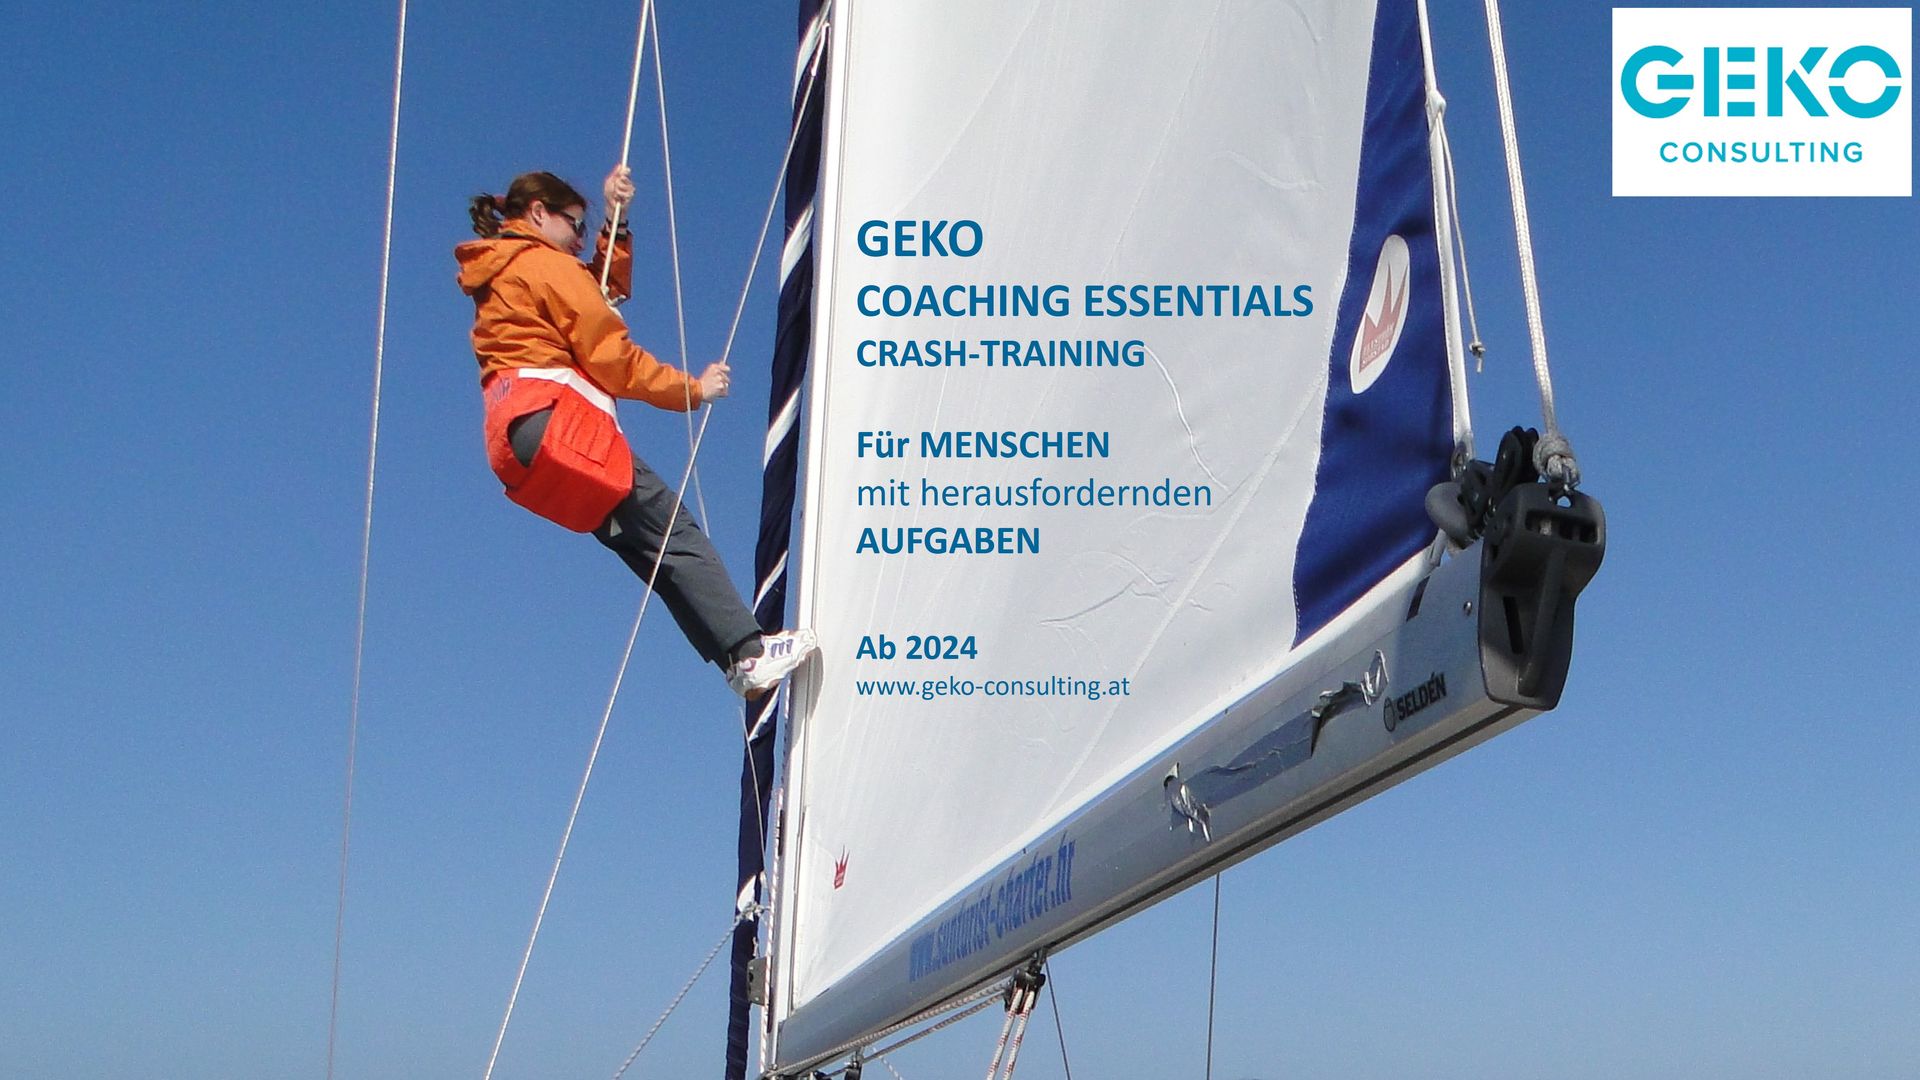 GEKO Coaching Essentials Crash-Training